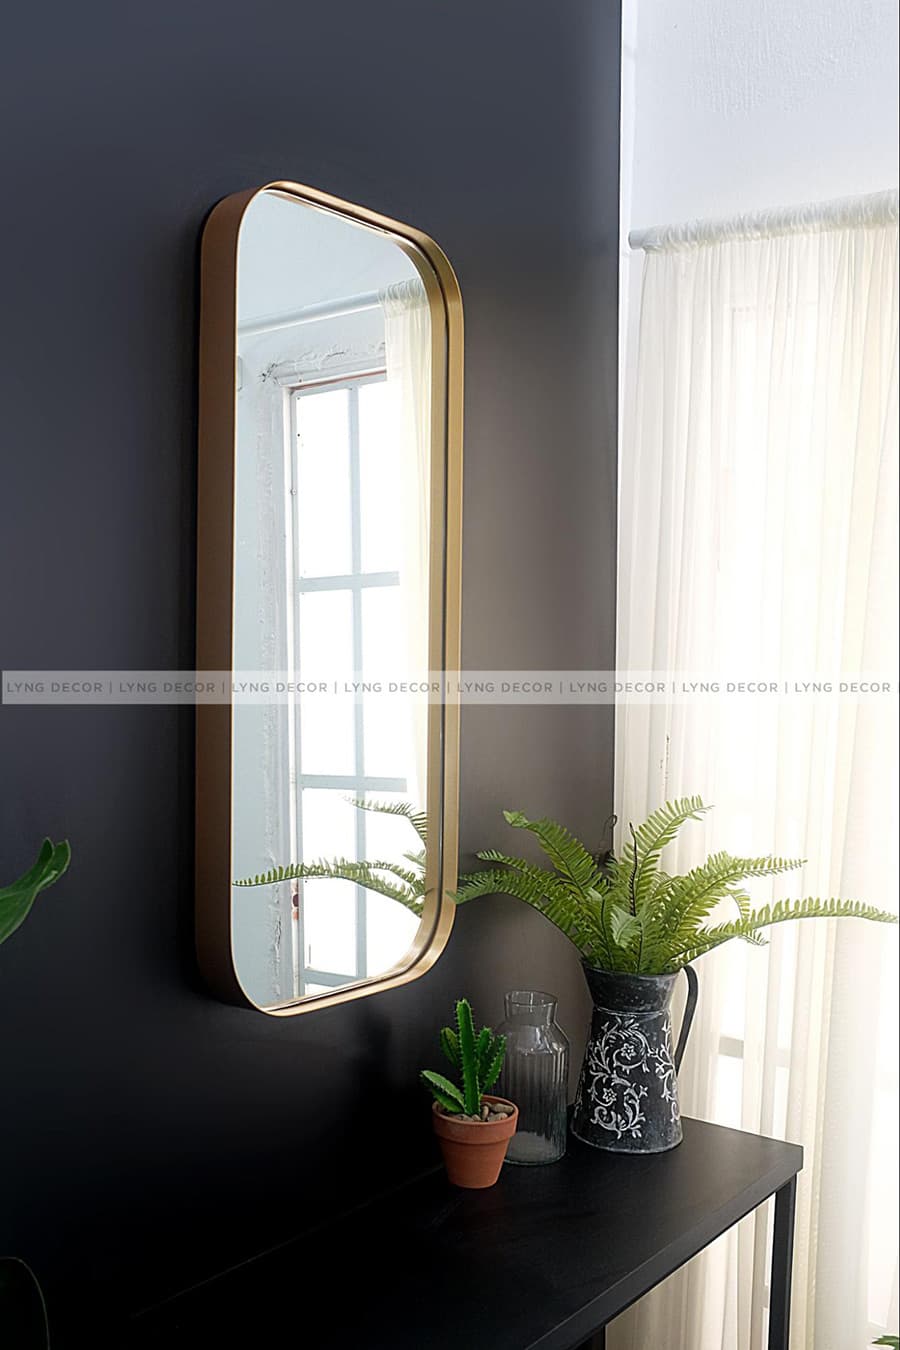 Gương inox mạ vàng với vẻ đẹp sang trọng và quý phái, khung gương mạ vàng thích hợp cho căn hộ được thiết kế theo phong cách cổ điển hoặc tân cổ điển.